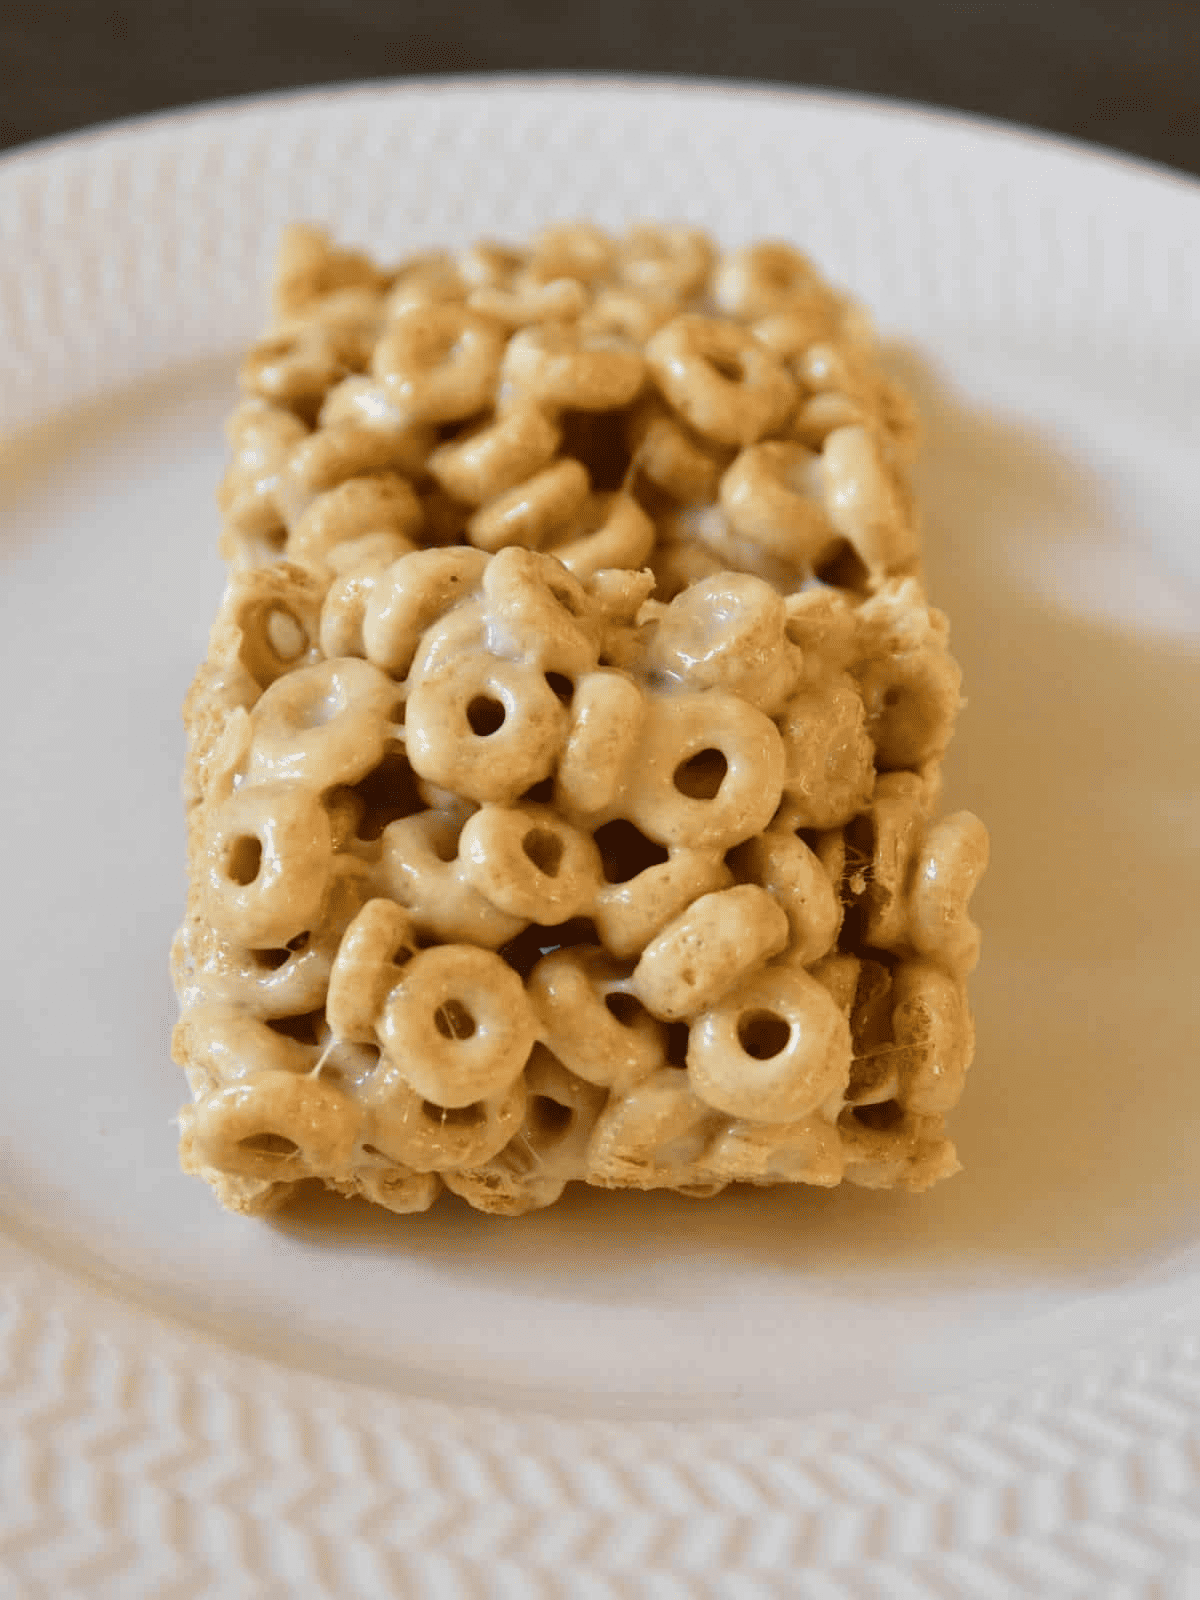 cheerio marshmallow treats on plate